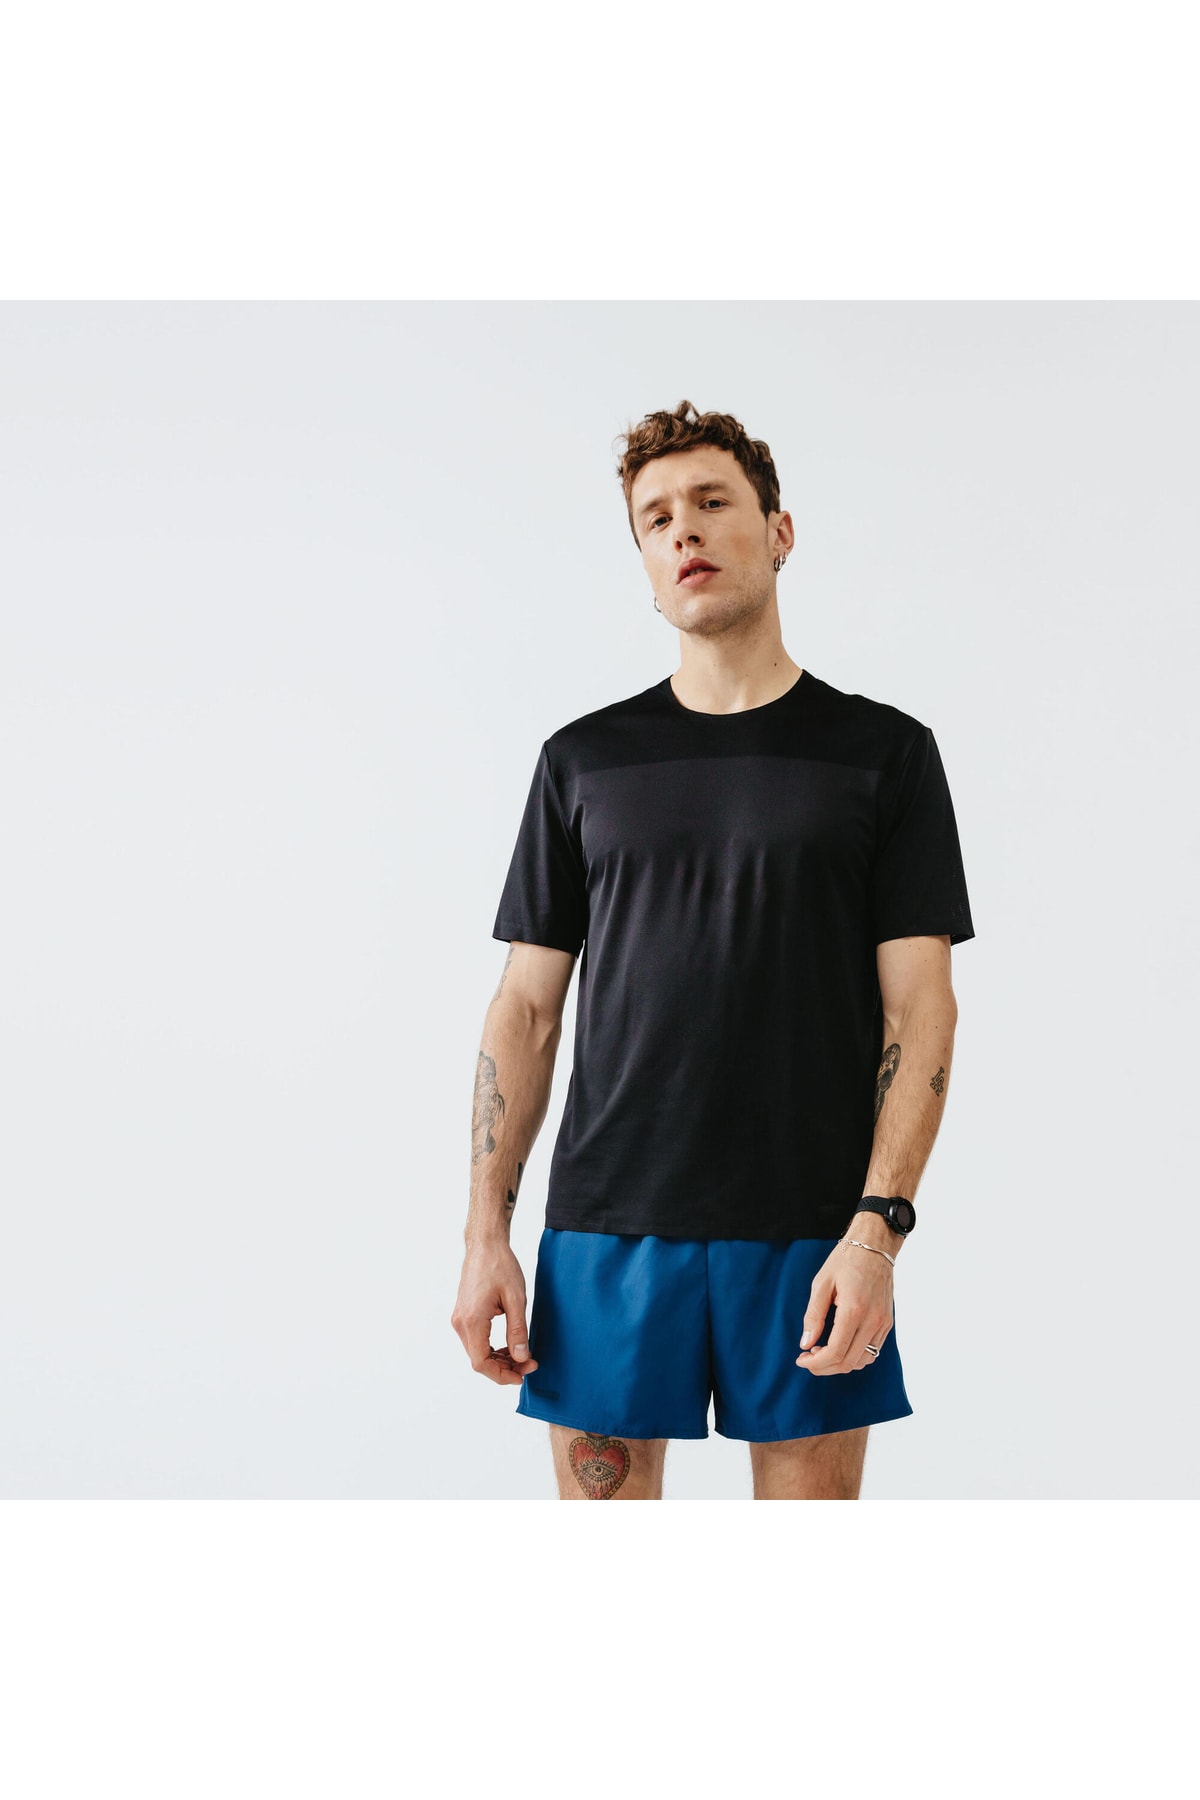 Decathlon Kalenji Erkek Koşu Tişörtü - Siyah - Dry+ Breath